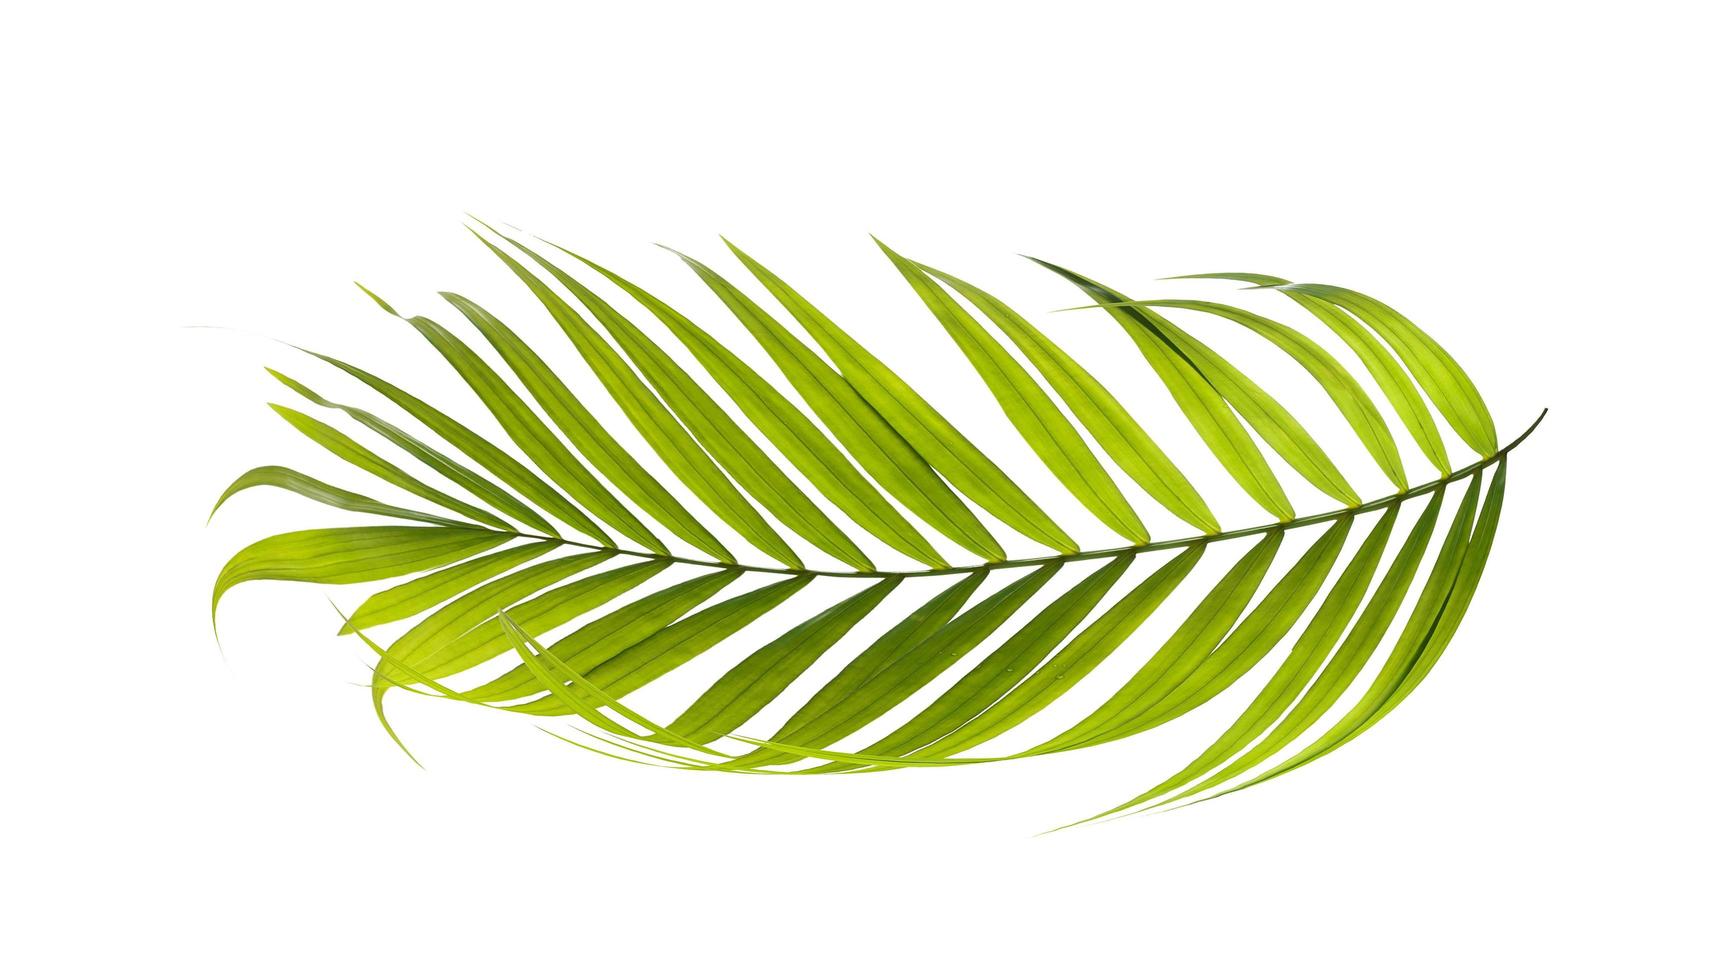 palmblad isolerad på vit bakgrund foto